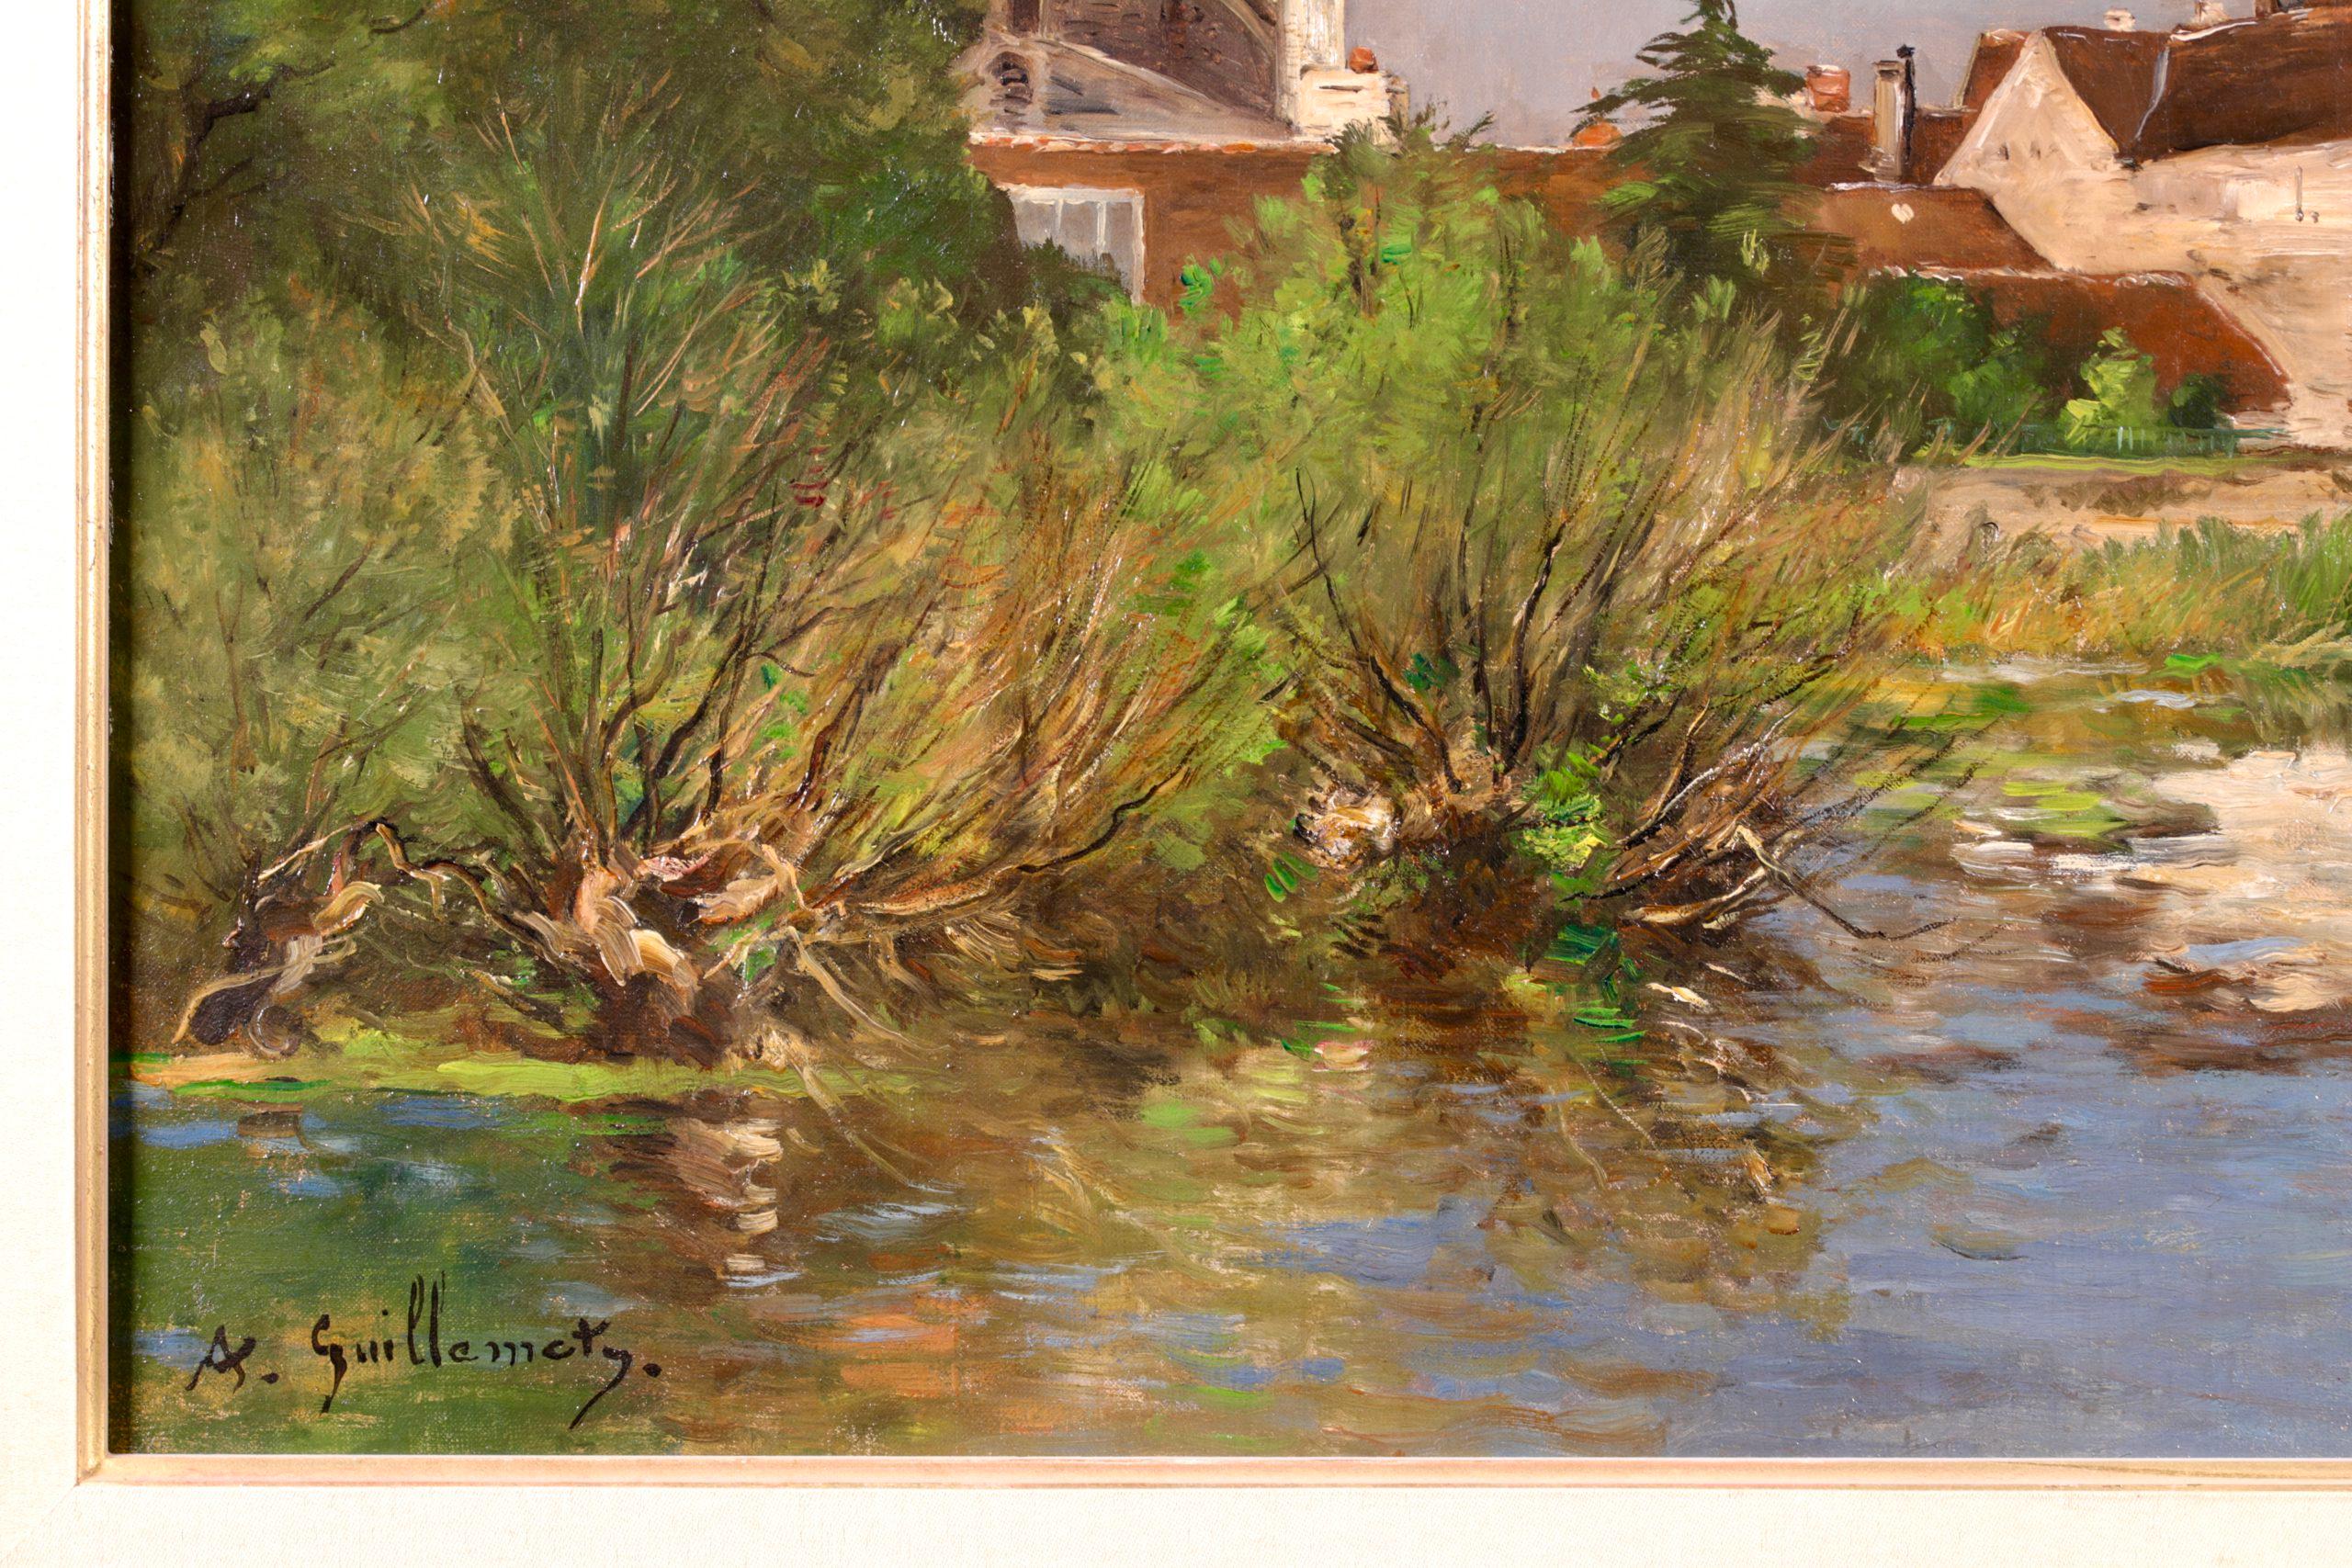 Paysage signé à l'huile sur toile vers 1890 par le peintre impressionniste français Jean Baptiste Antoine Guillemet. L'œuvre représente une vue de Moret-sur-Loing, dans le nord-est de la France, depuis la rive du Loing. Les bâtiments de la Townes se